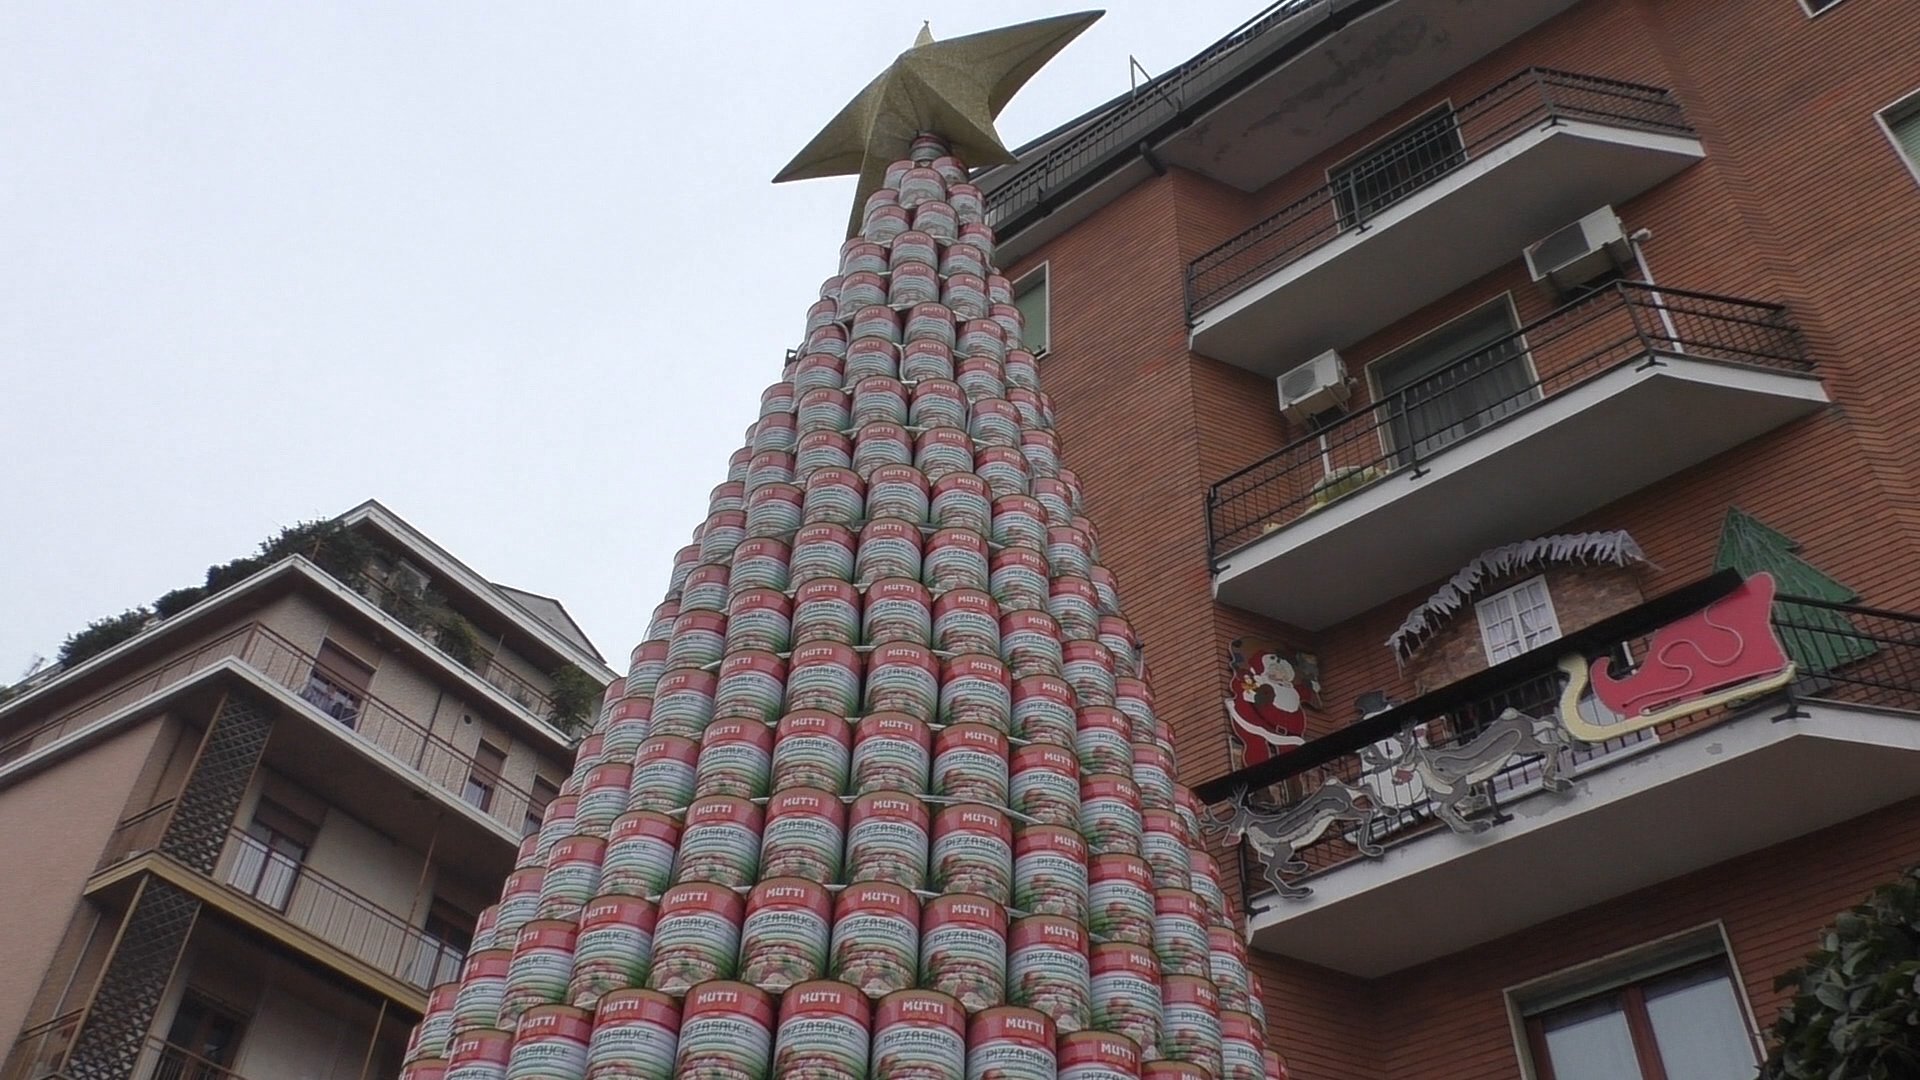 Alla Pizzeria Soleluna tornerà il grande albero di lattine: “Puntiamo al Guinness World Record”